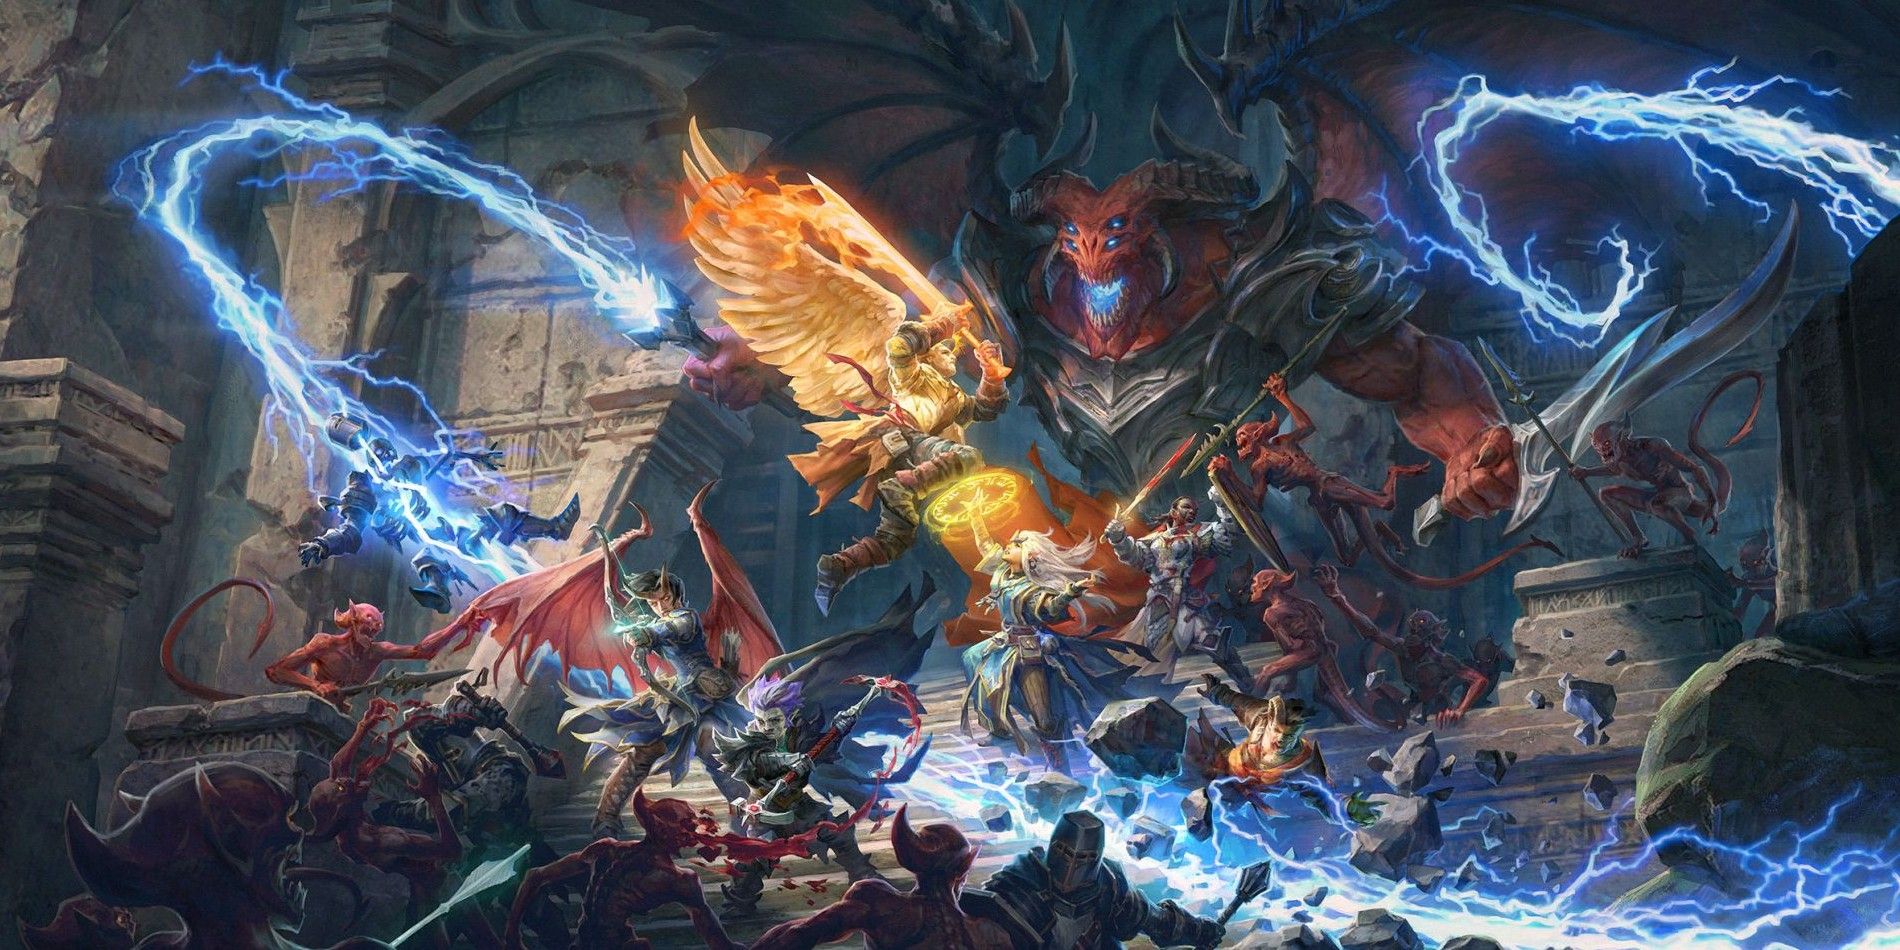 dragão pathfinder enfrenta jogadores com arcos, magia e outras armas